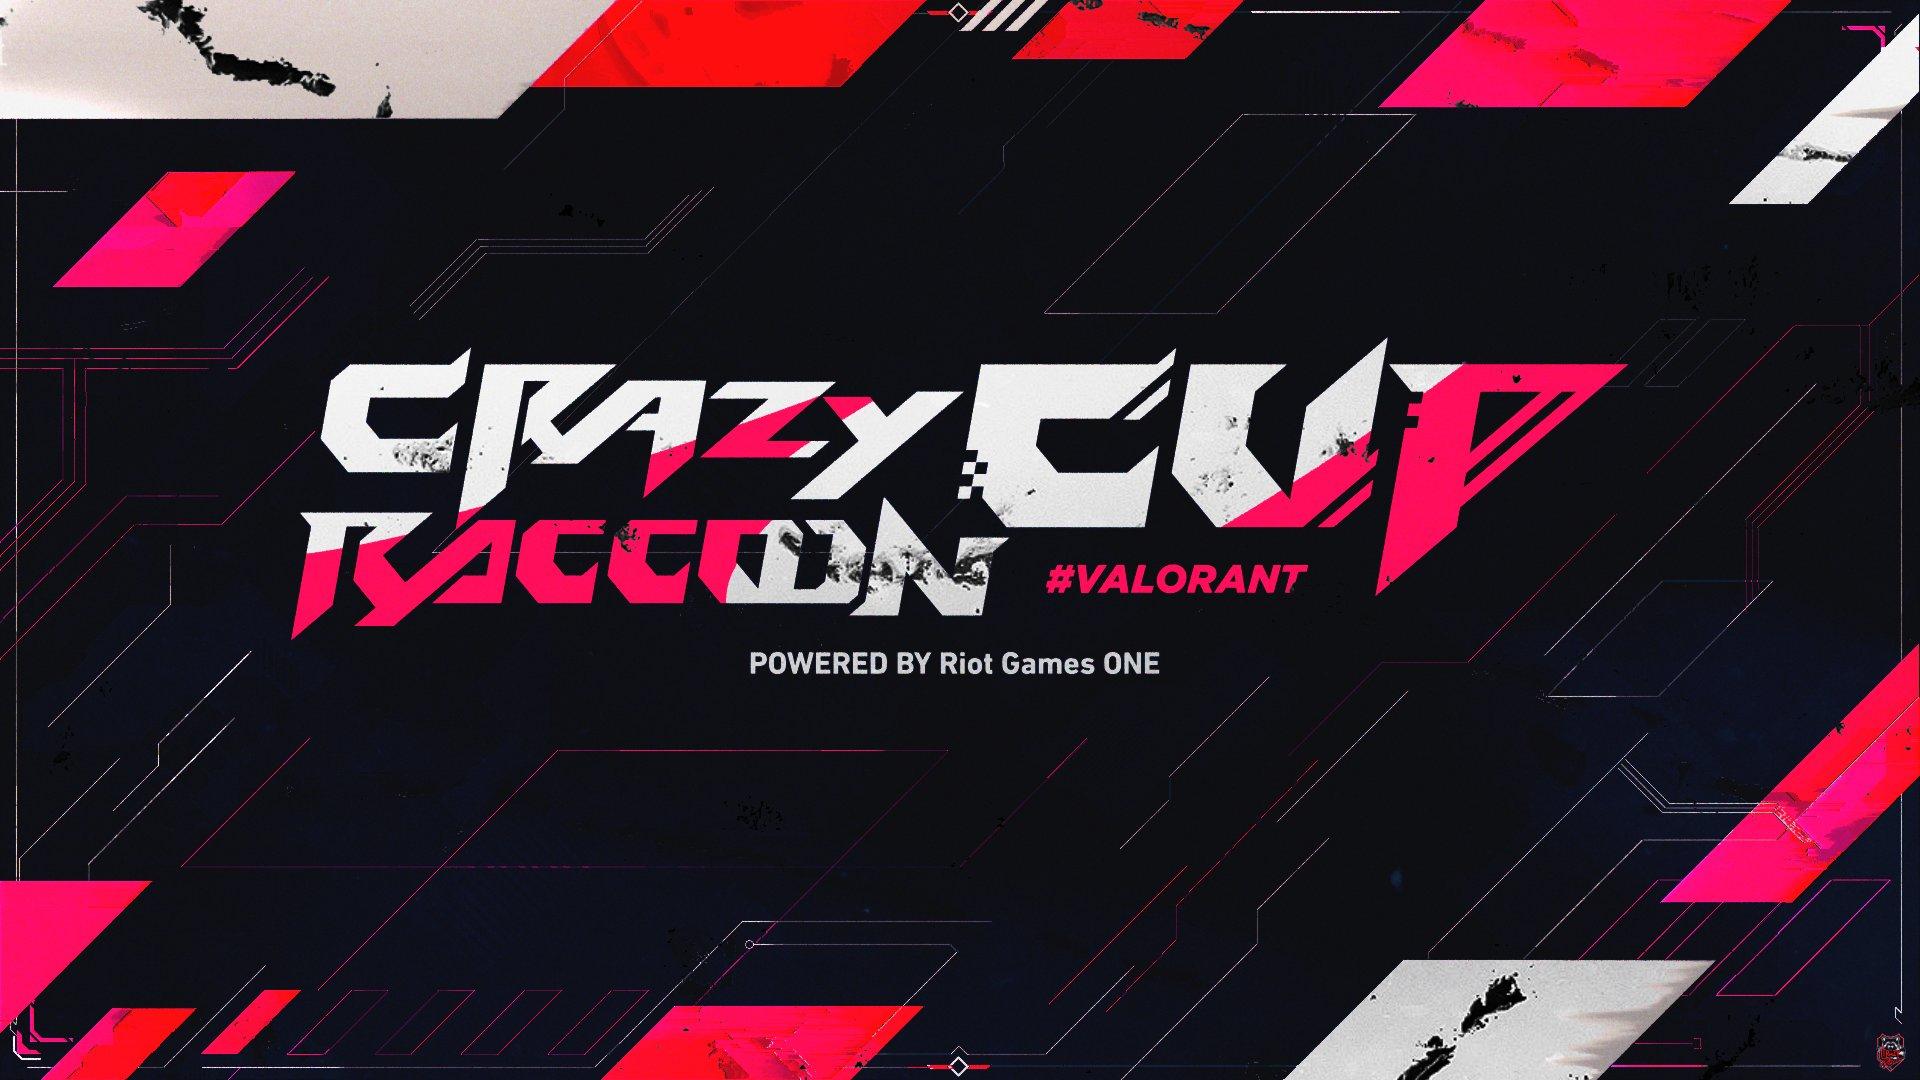 第4回 Crazy Raccoon Cup VALORANT powered by Riot Games ONEの見出し画像